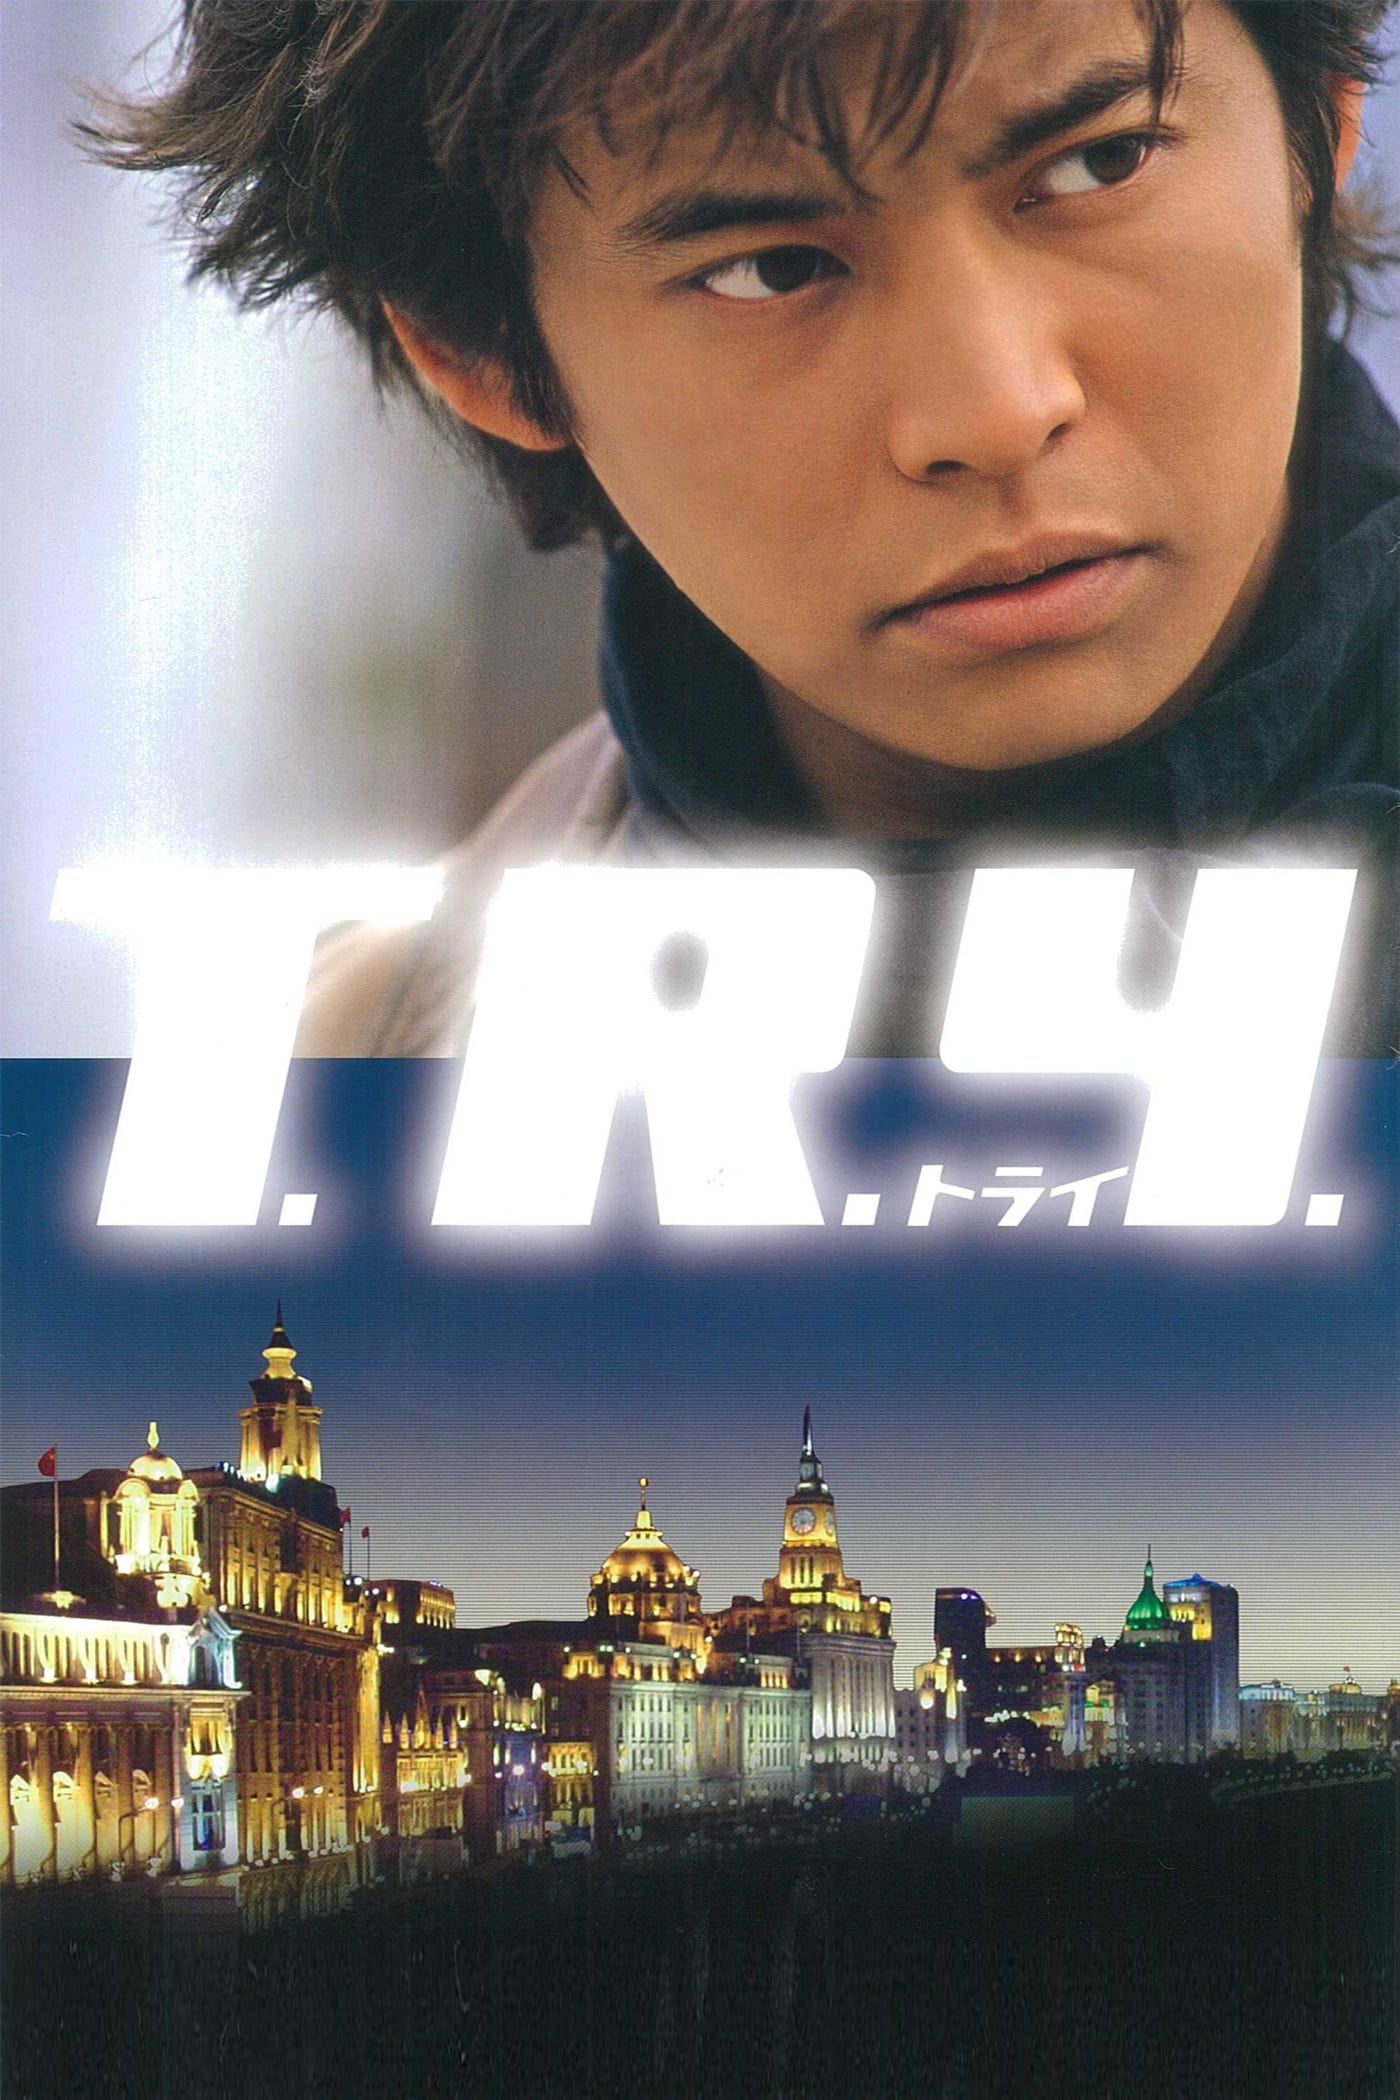 T.R.Y. (2003)